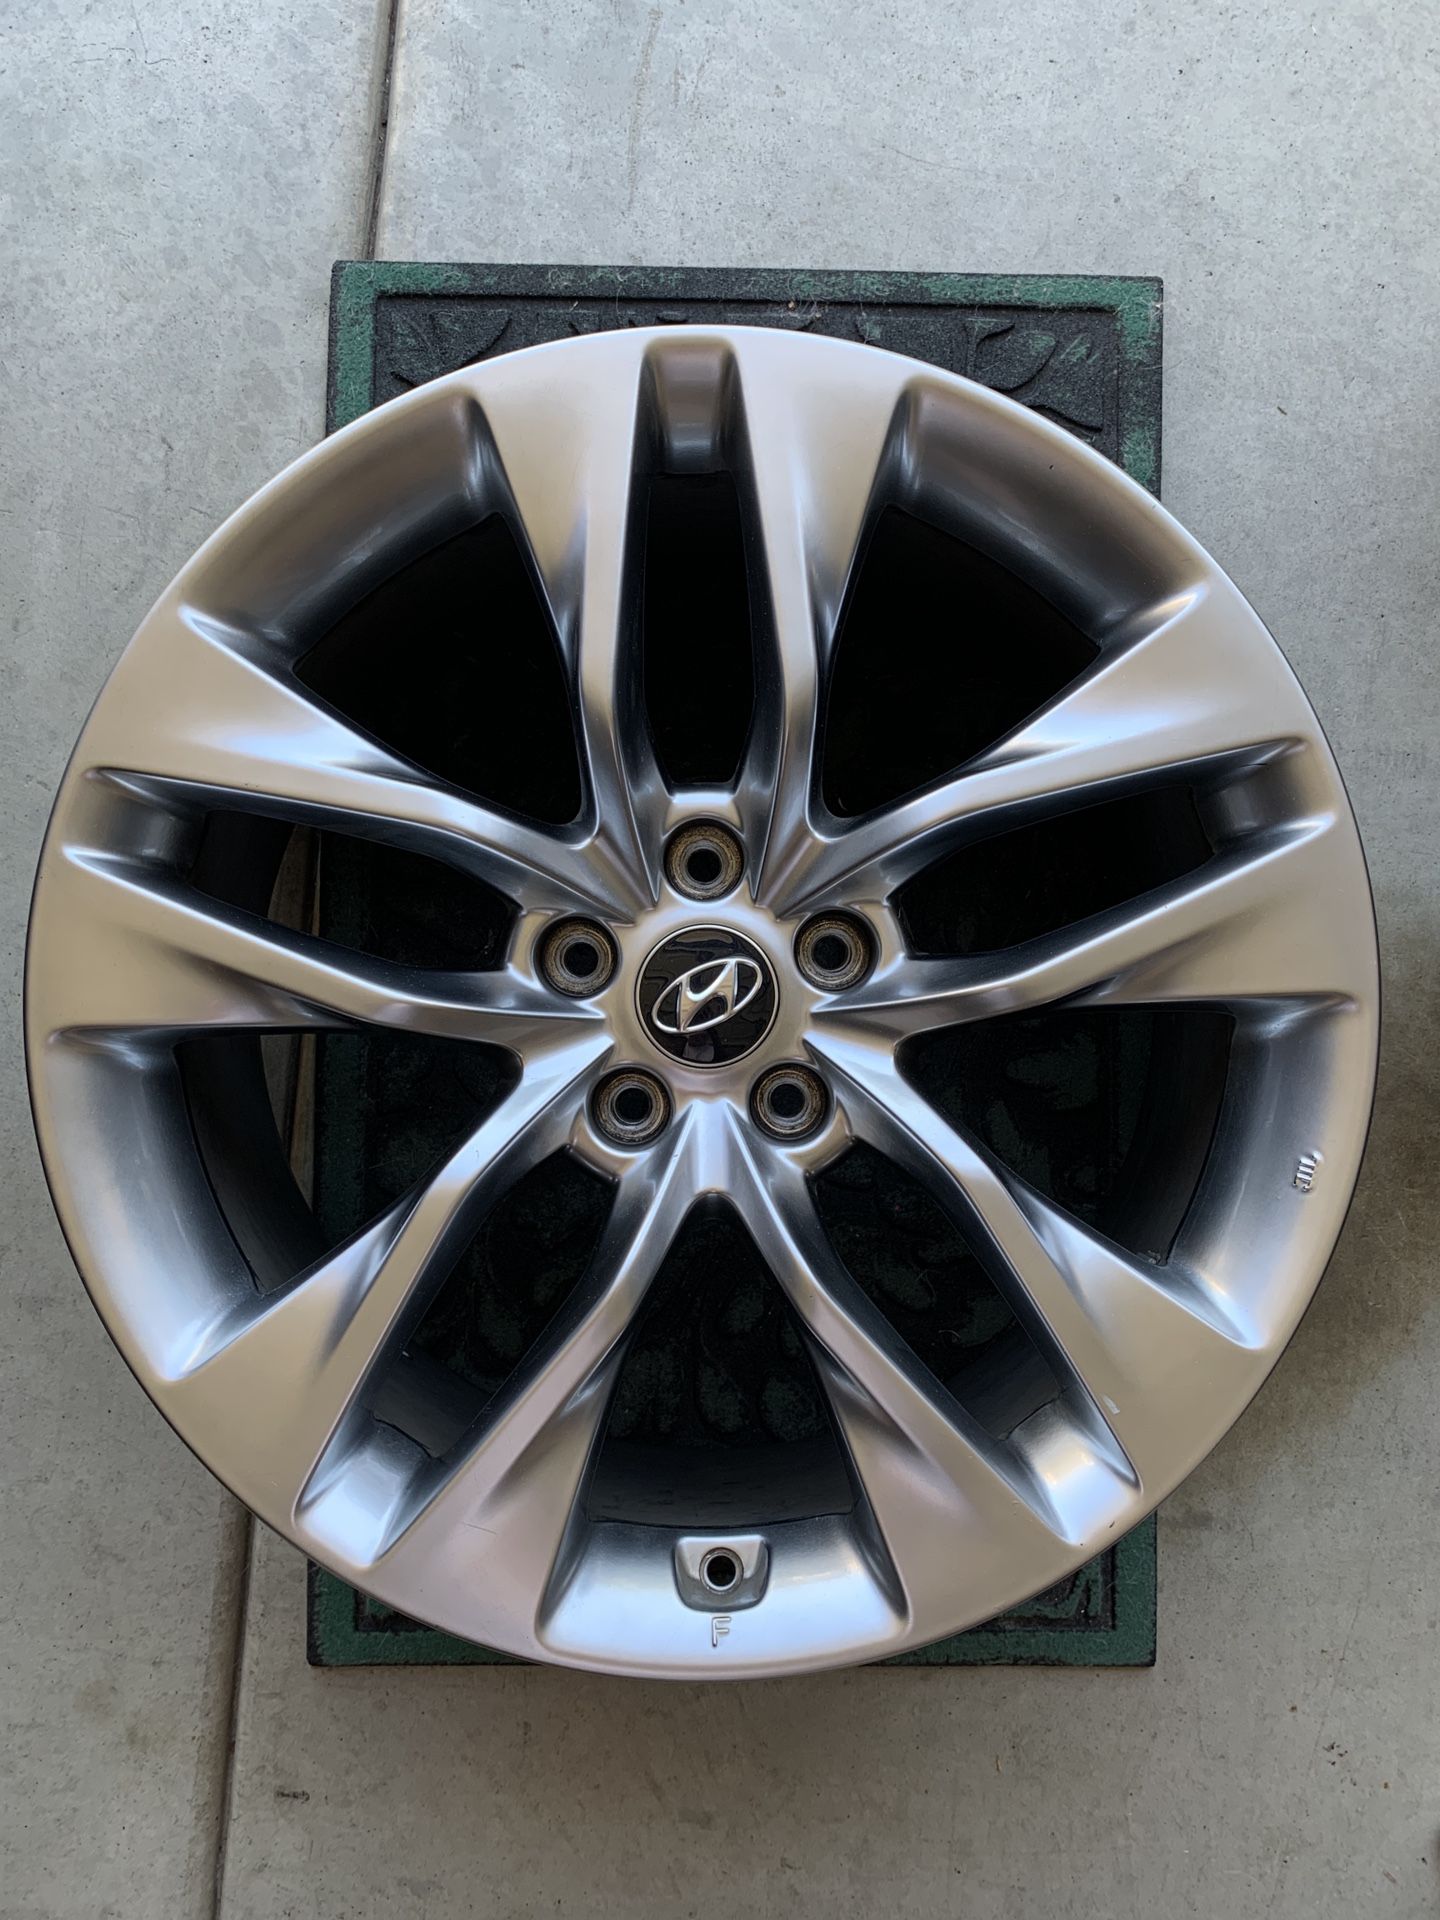 Genesis Coupe Wheels - 19 in